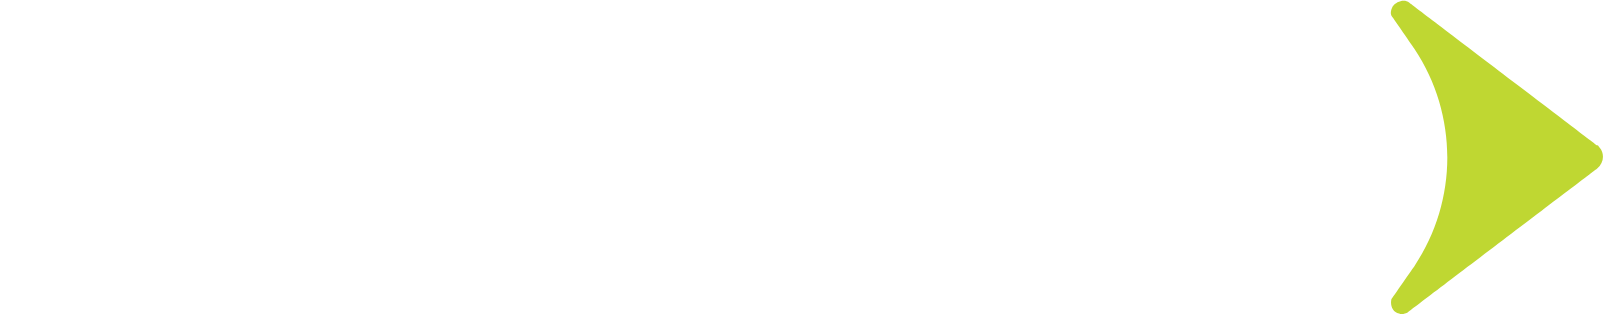 Globant Logo groß für dunkle Hintergründe (transparentes PNG)